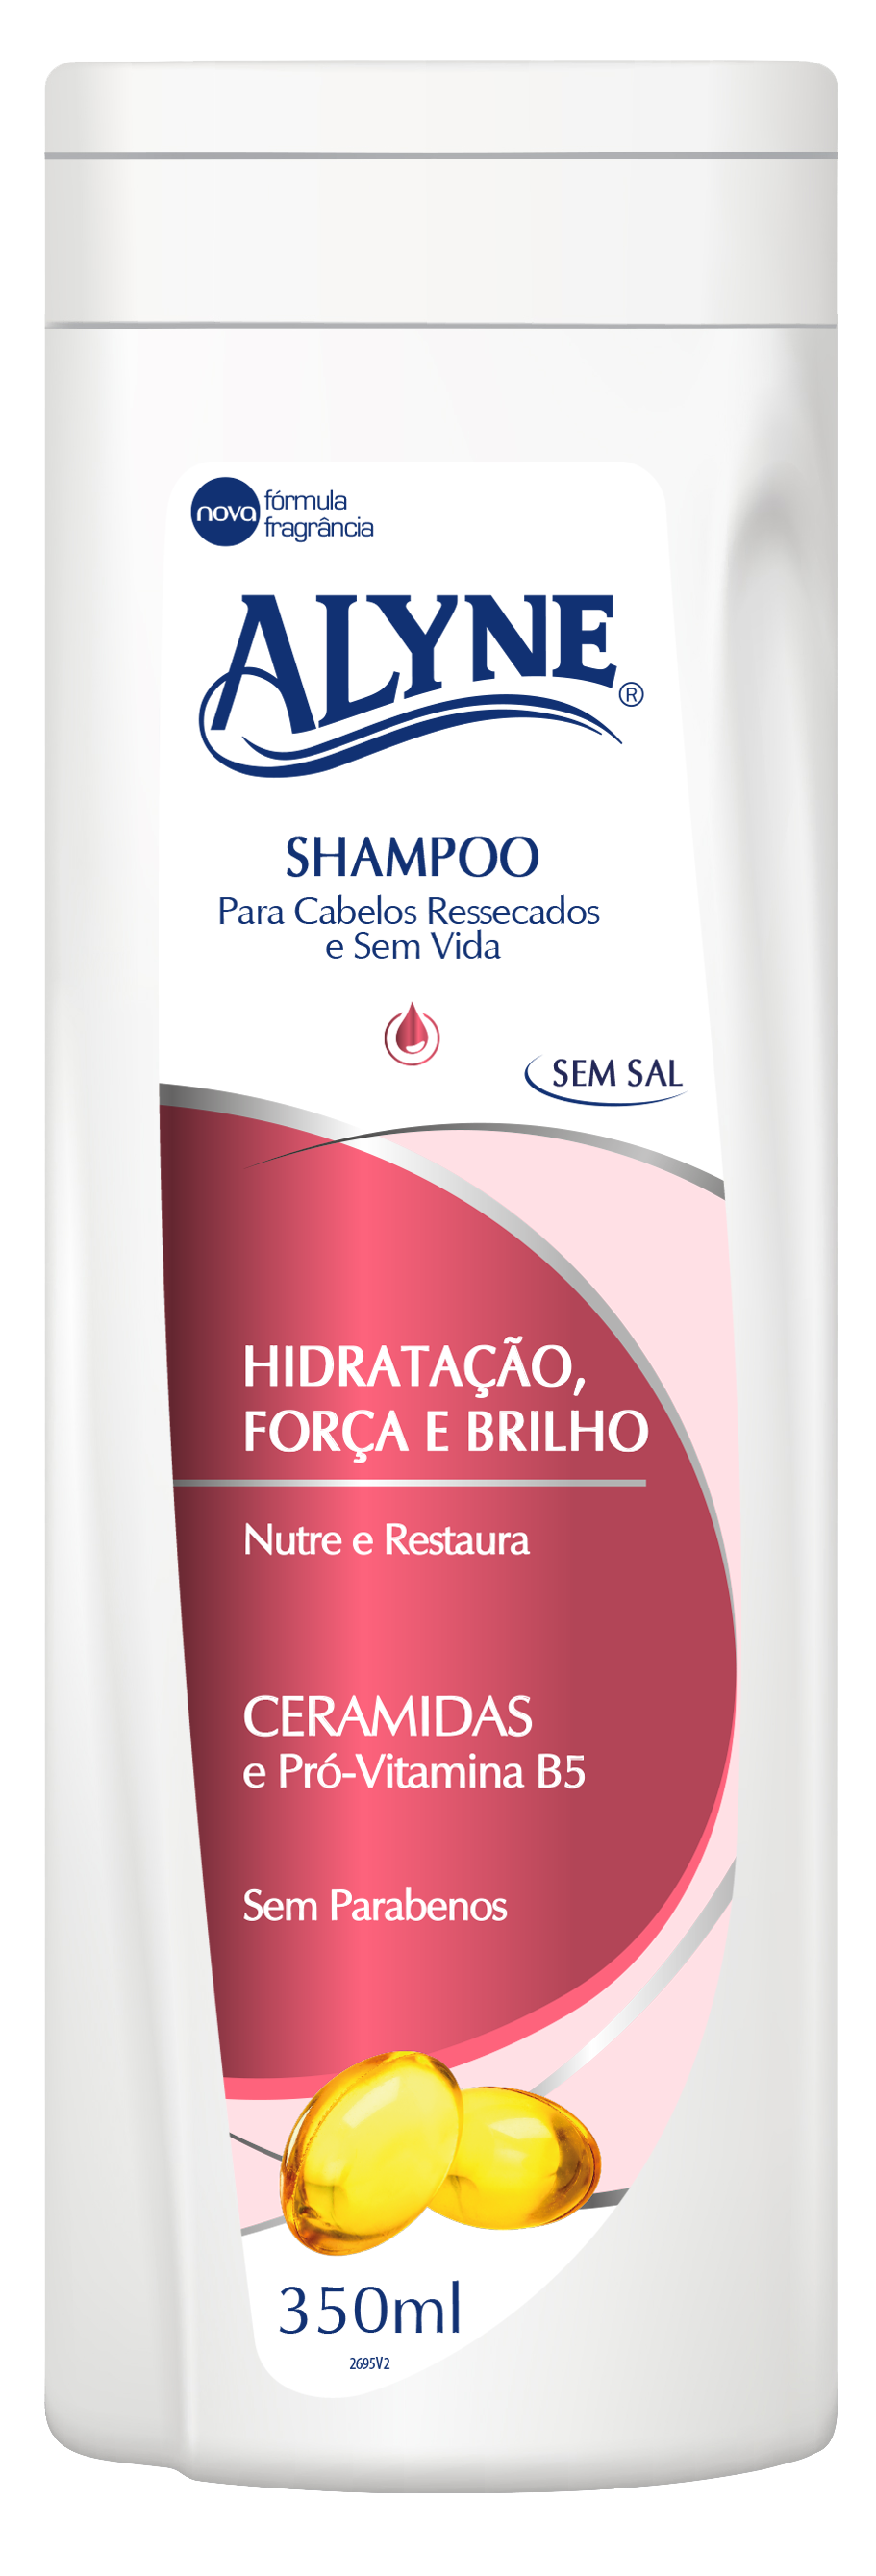 Shampoo Alyne Hidratação, Forca e Brilho 350ml